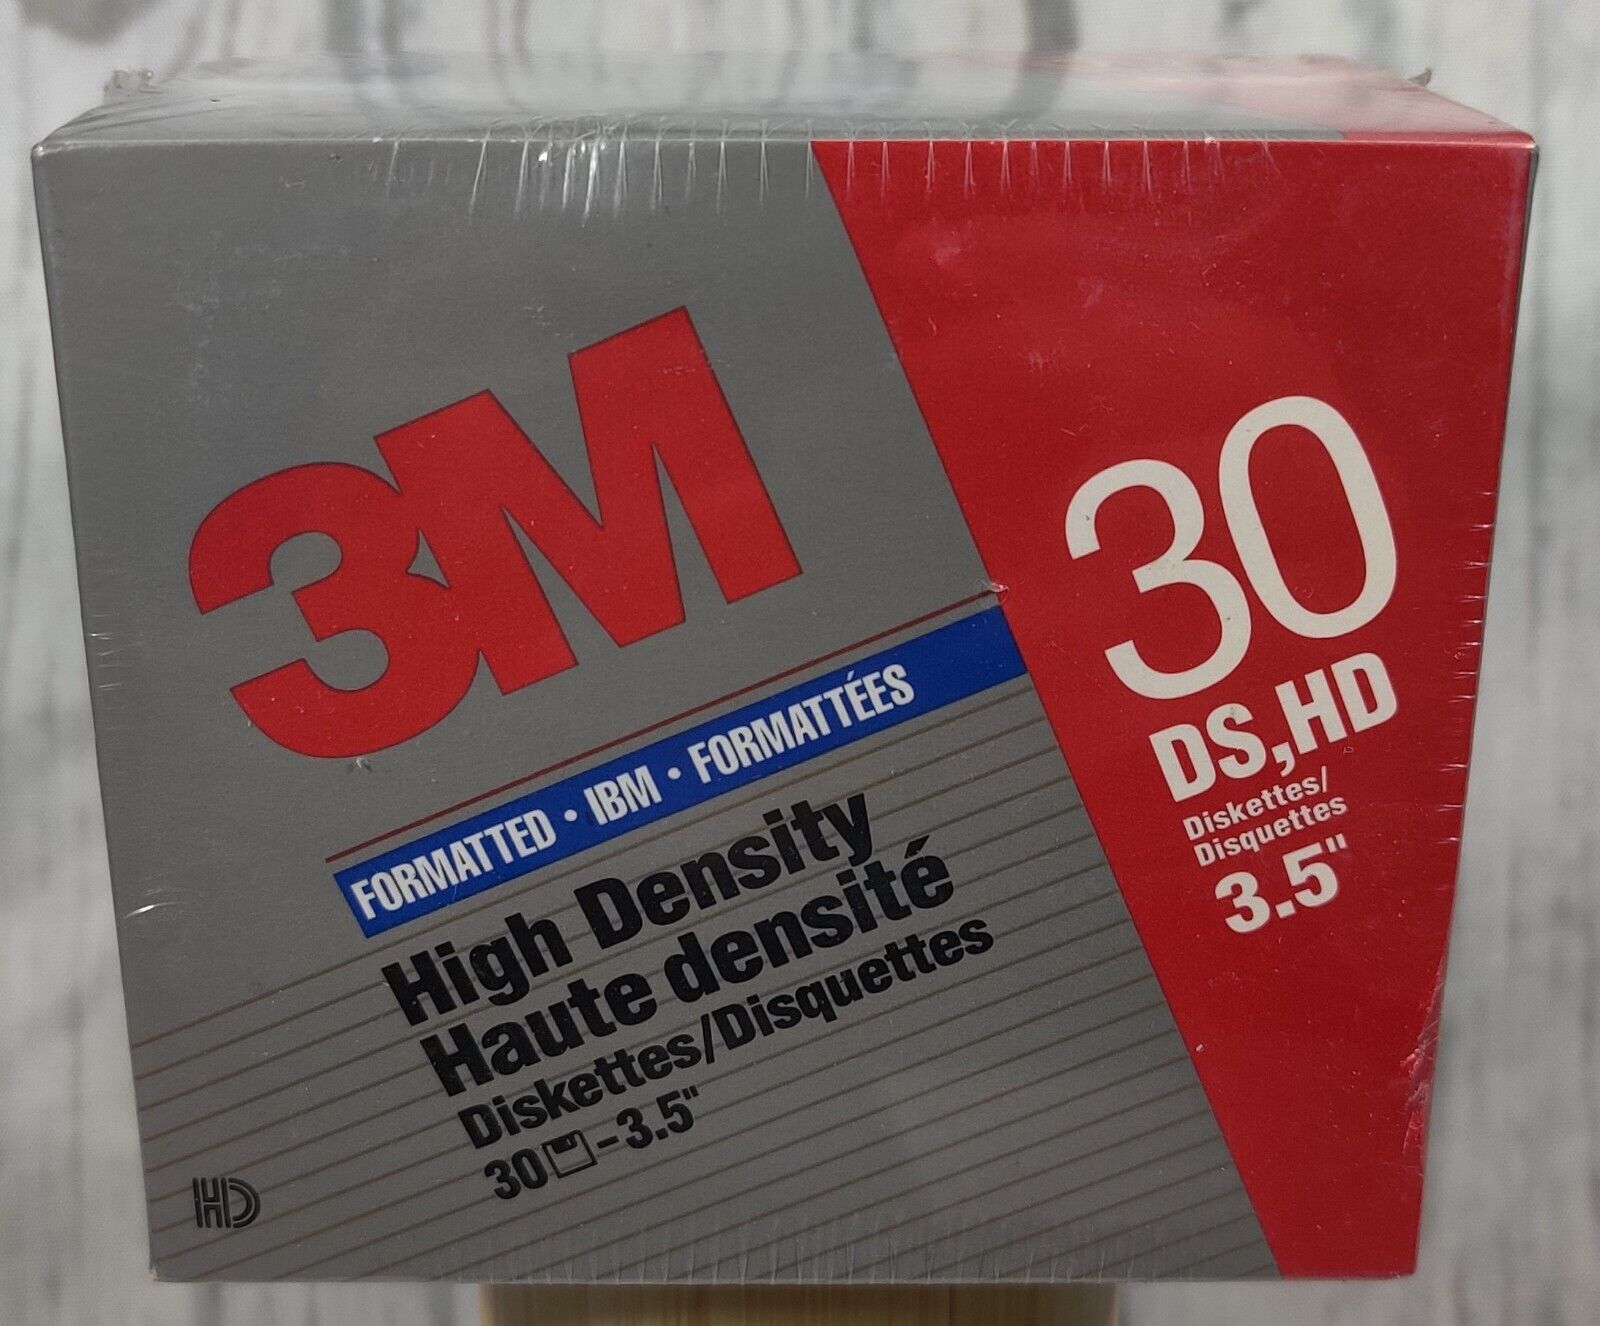 3M High Density IBM Formatted Diskettes 3.5” 30 Pack DS HD Floppy Discs 1994 VTG